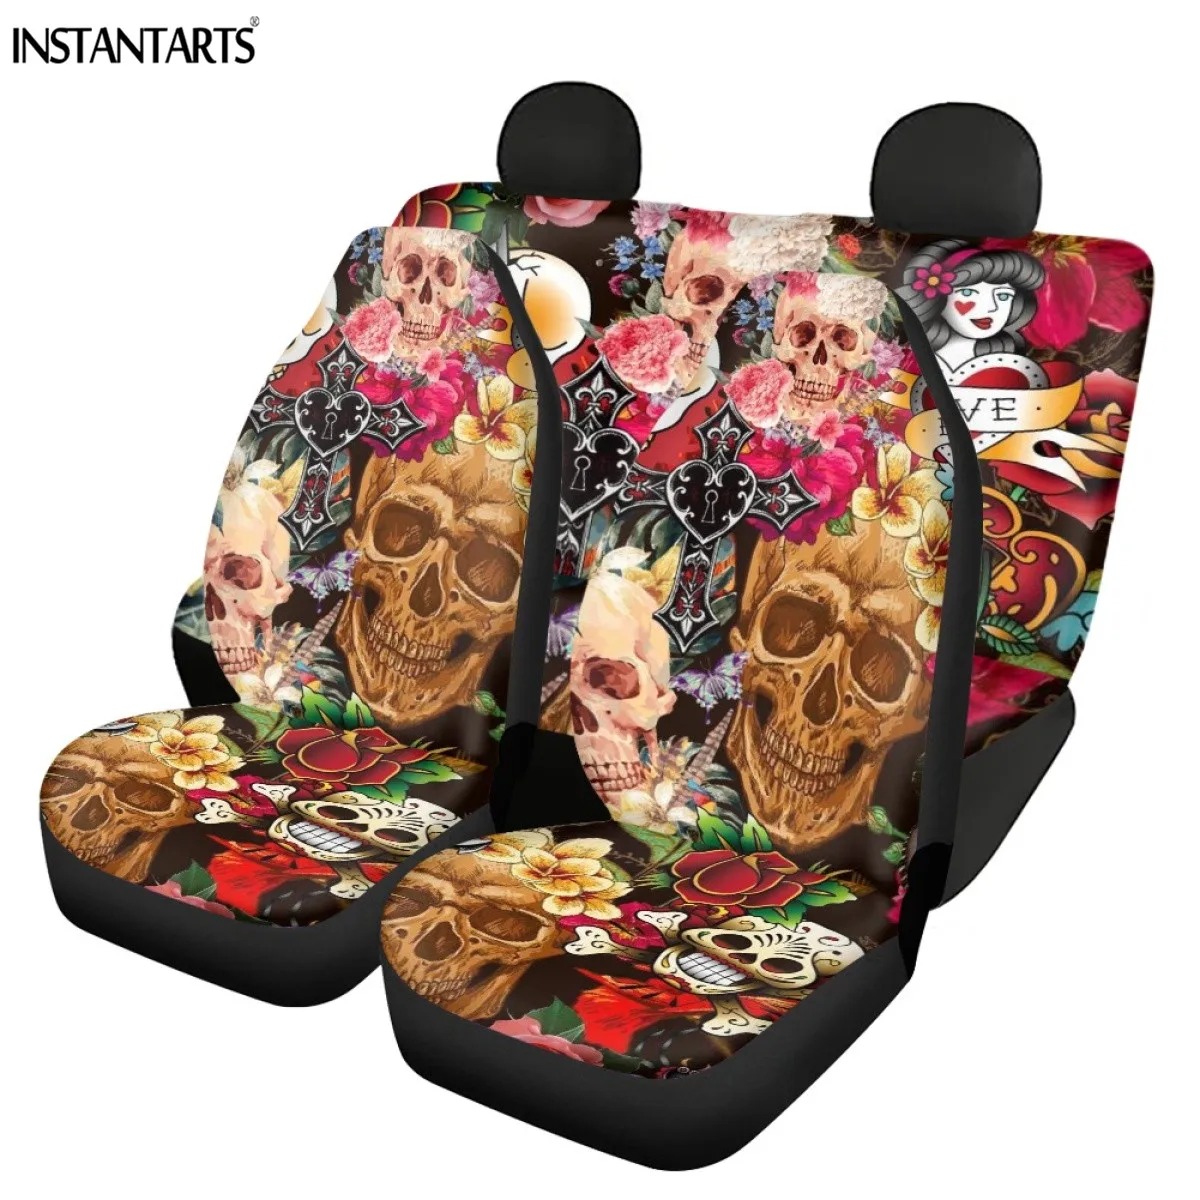 

Чехлы для автомобильных сидений INSTANTARTS, удобные 3d-чехлы на передние и задние сиденья, с рисунком черепа и сахара, модные аксессуары для автомобиля